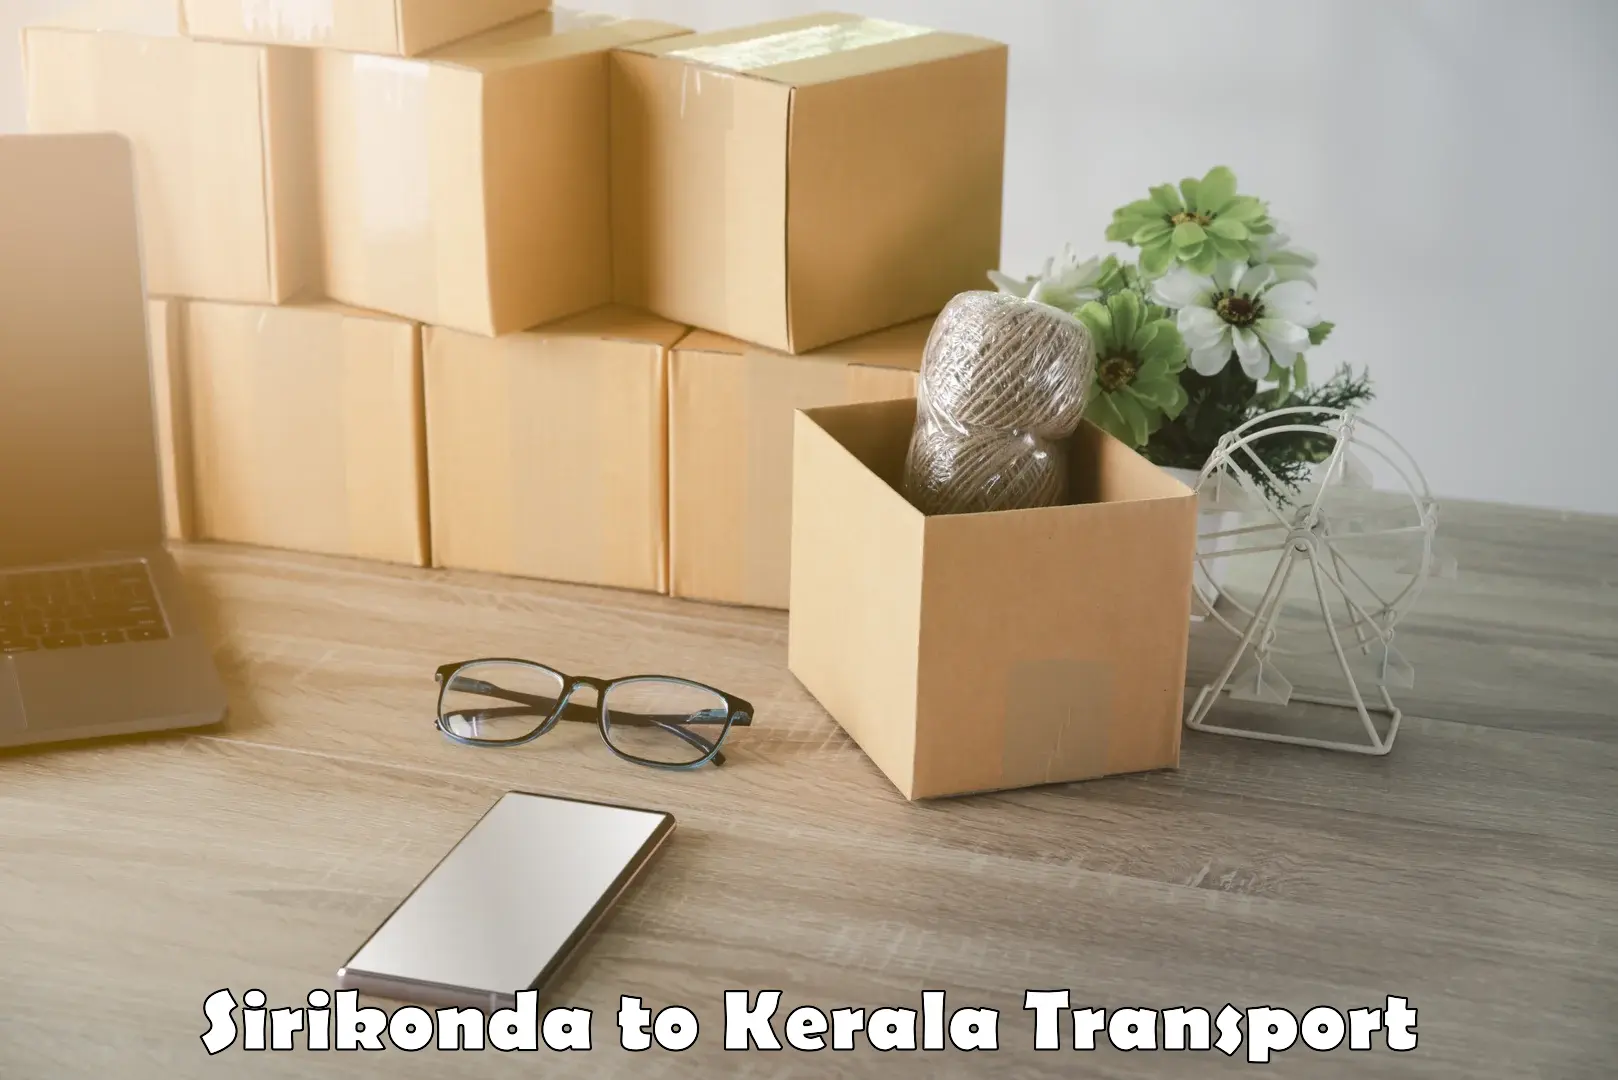 Transport in sharing Sirikonda to Kiliyanthara